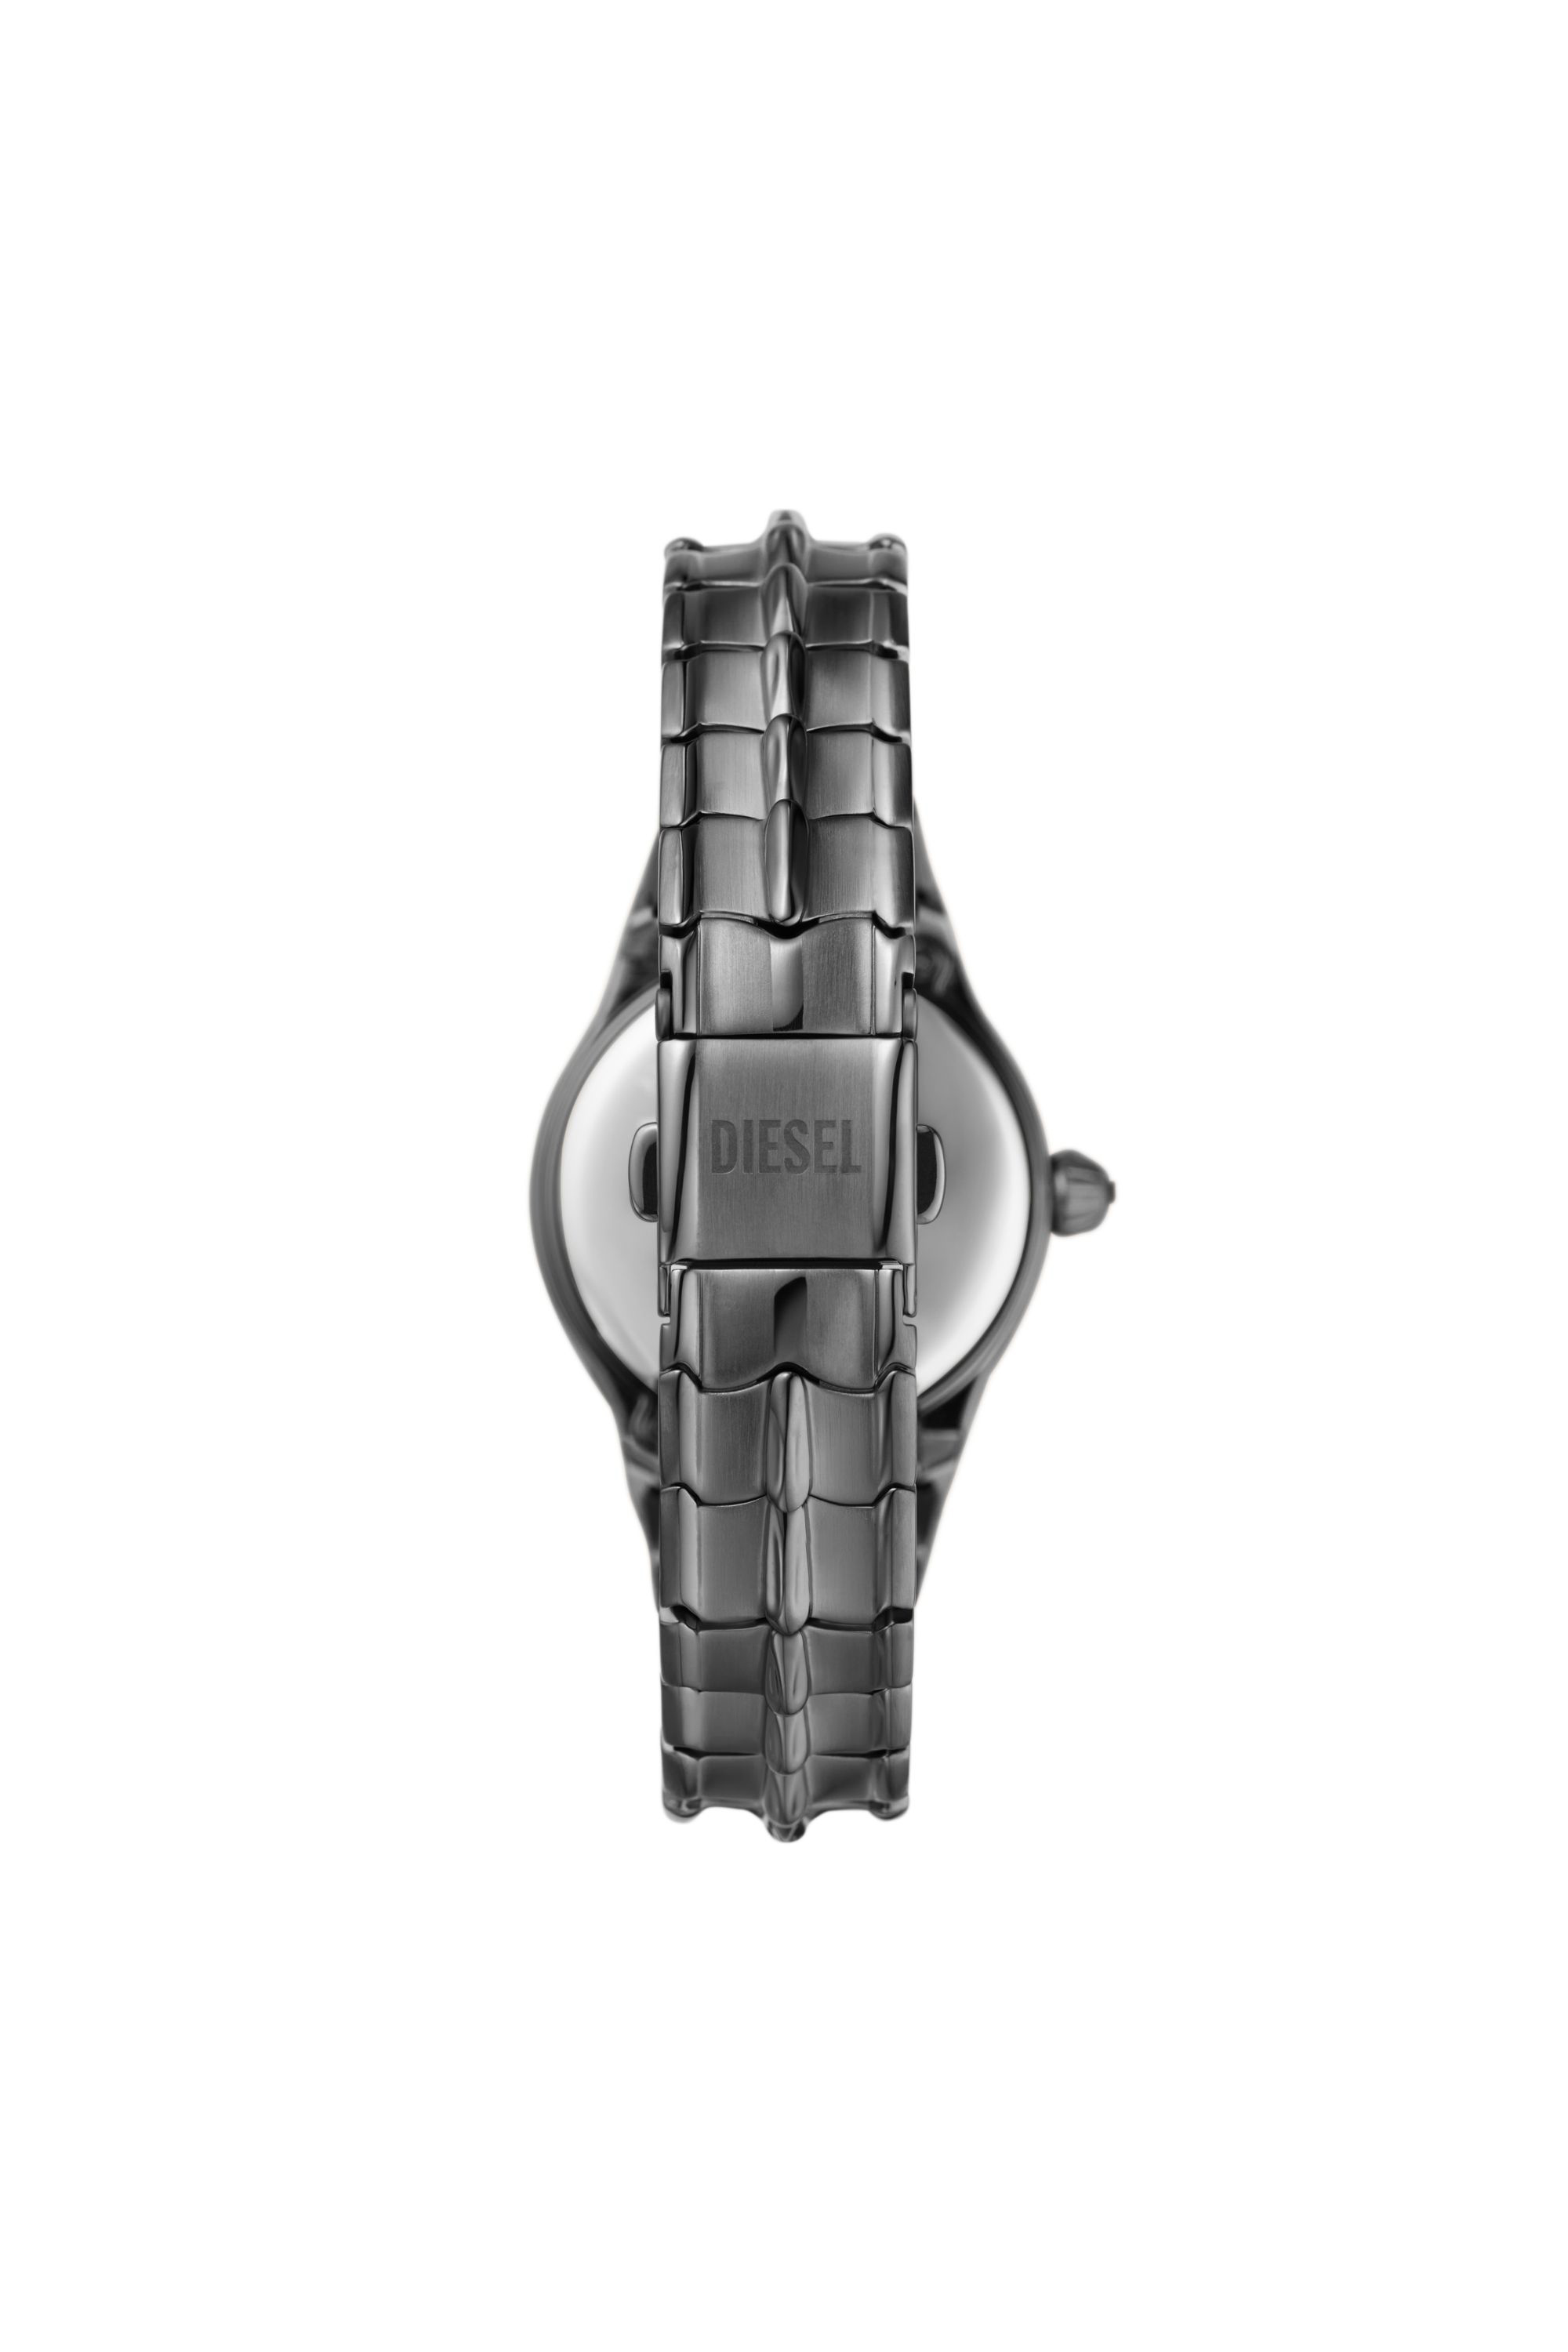 Diesel - DZ5603, Damen Vert Armbanduhr aus metallgrauem Edelstahl mit drei Zeigern in Grau - Image 2